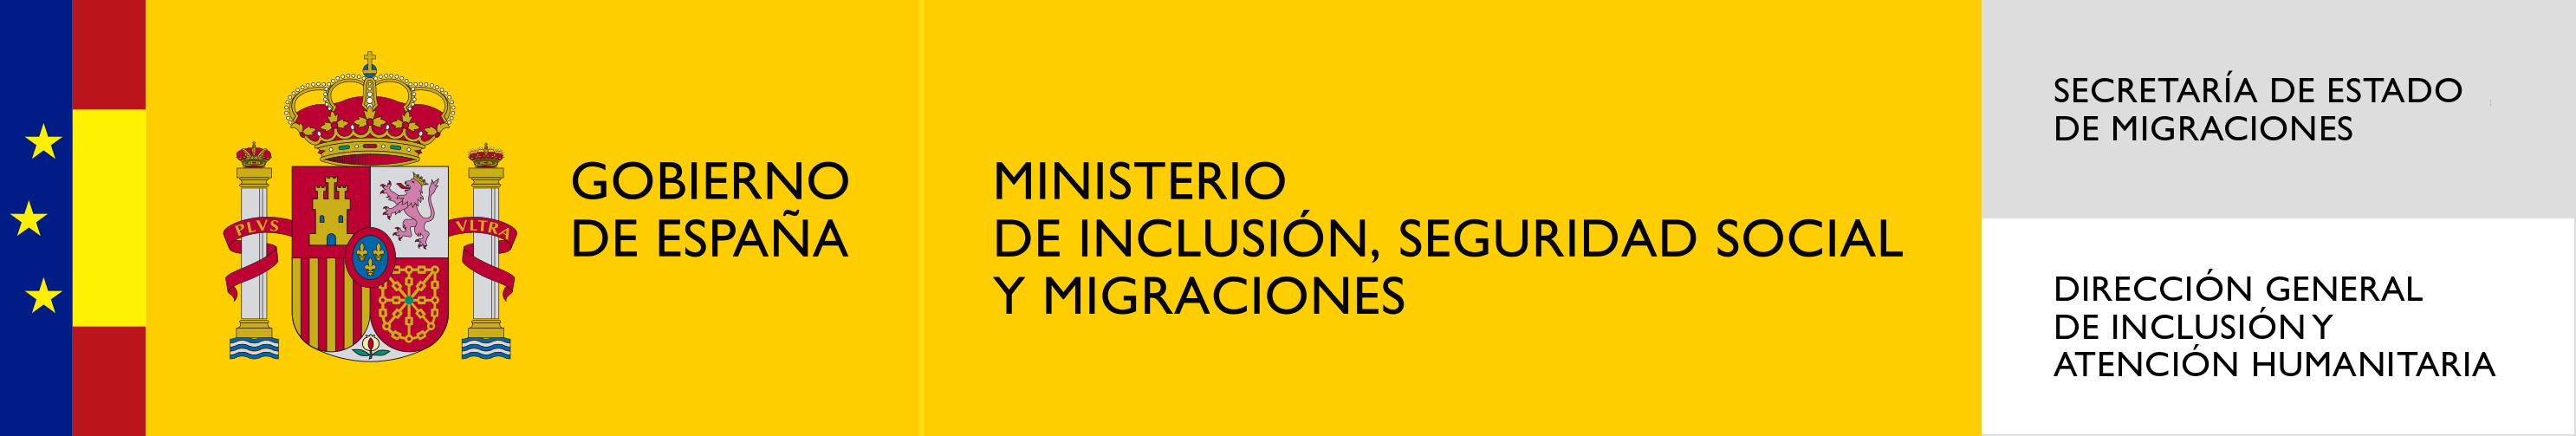 Ministerio de asuntos sociales logo